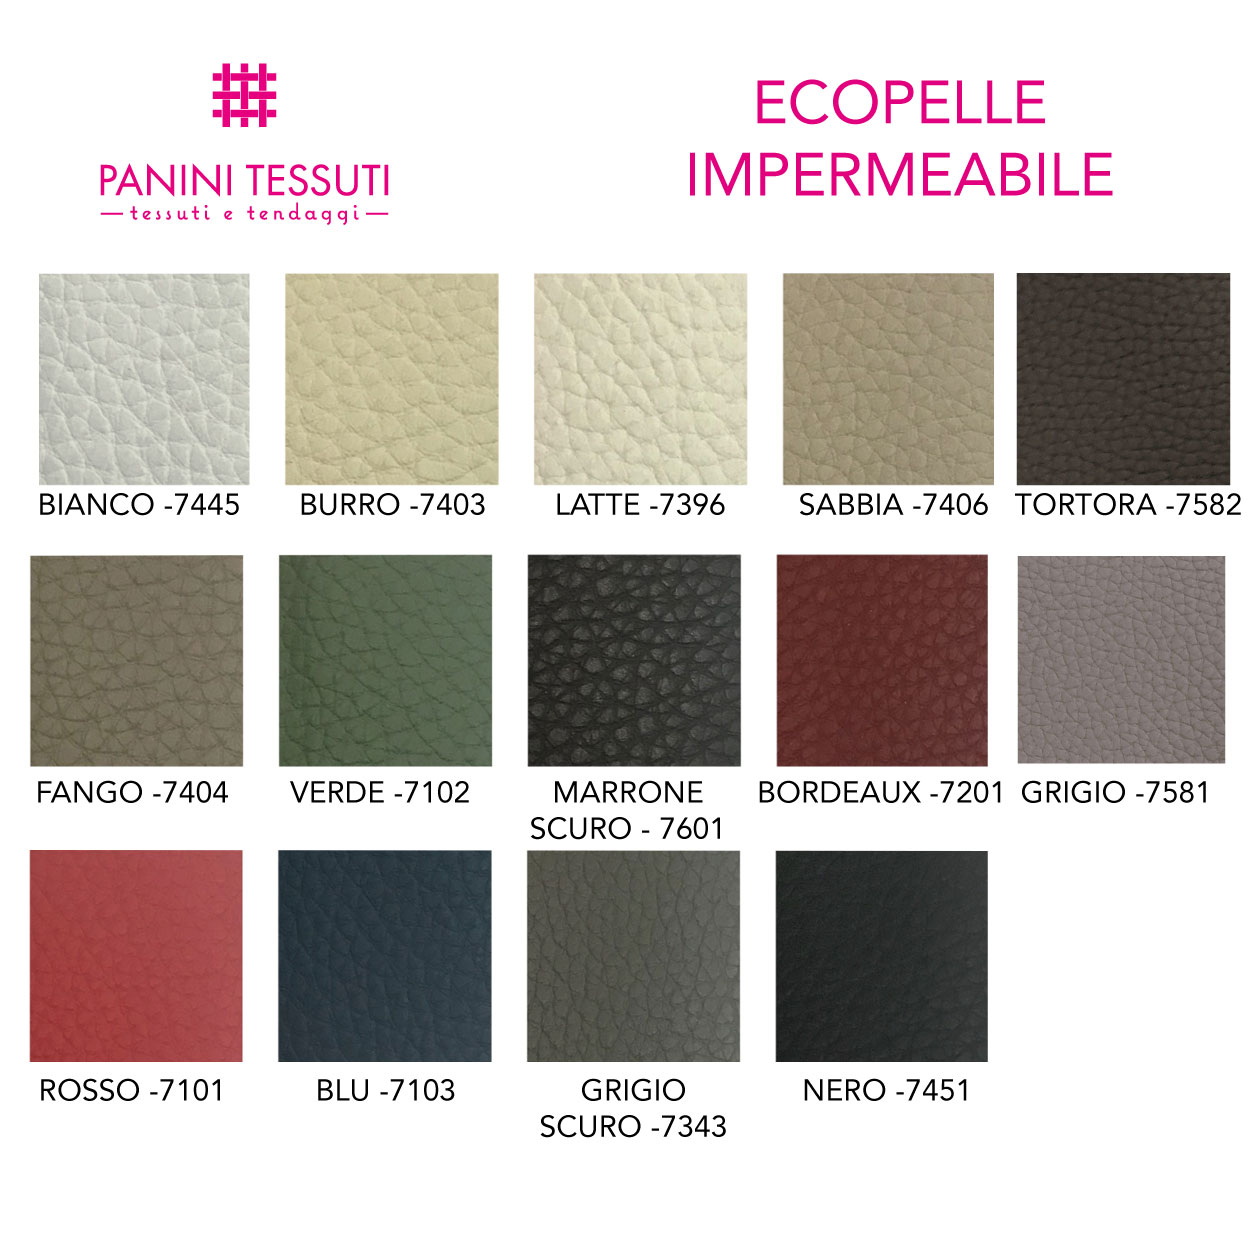 Ecopelle impermeabile cartella colore shopware (4)